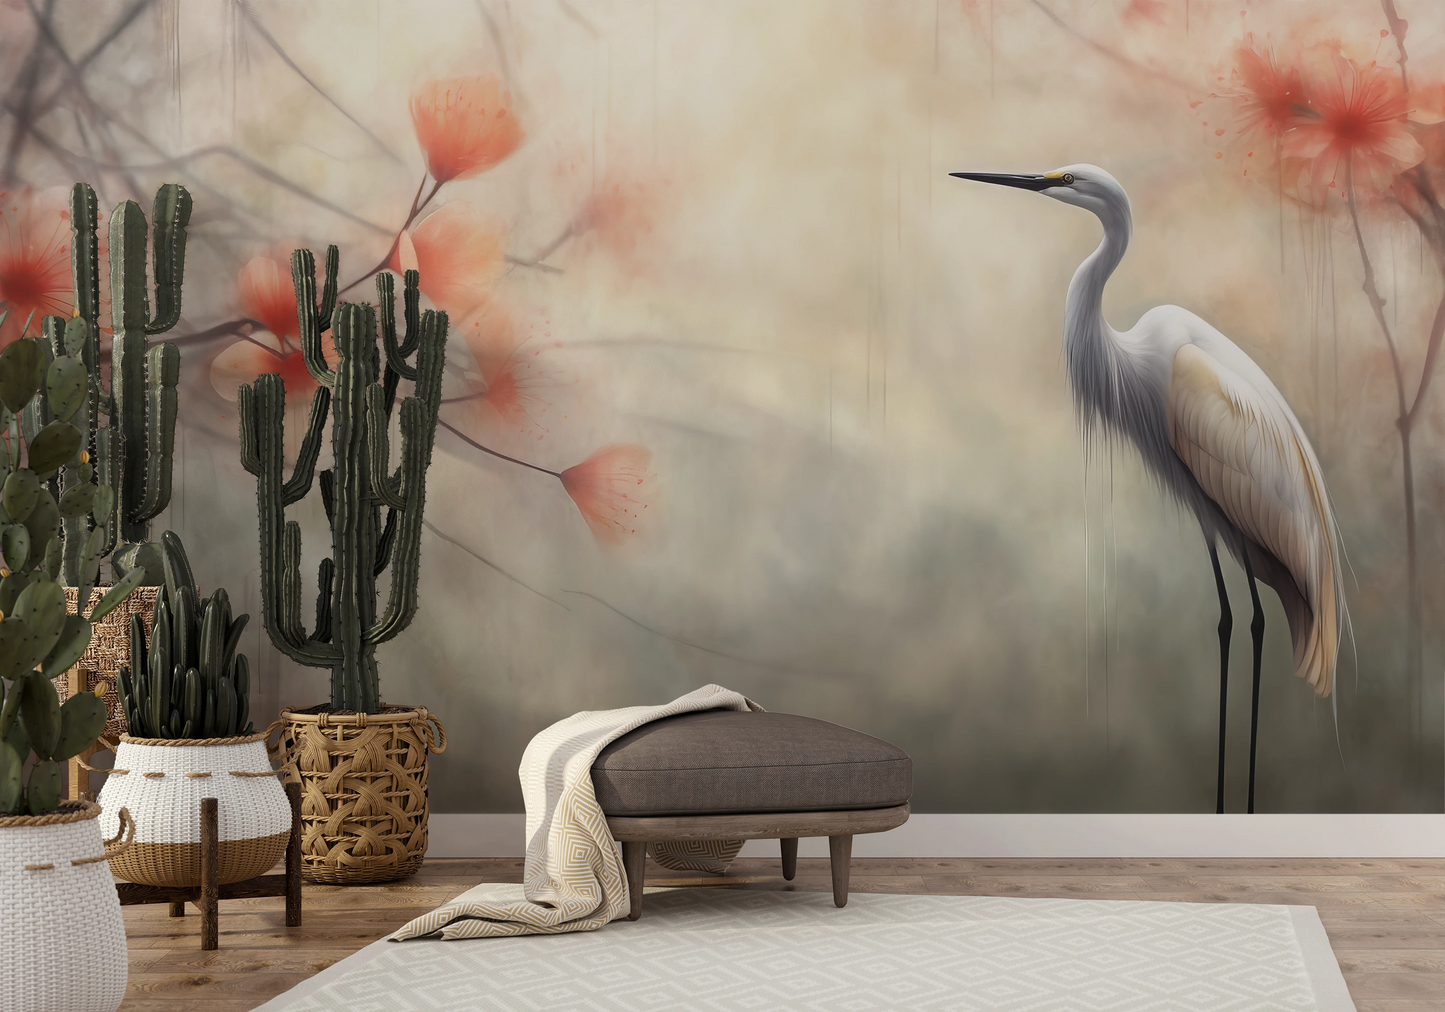 Fototapeta malowana o nazwie Serene Heron pokazana w aranżacji wnętrza.